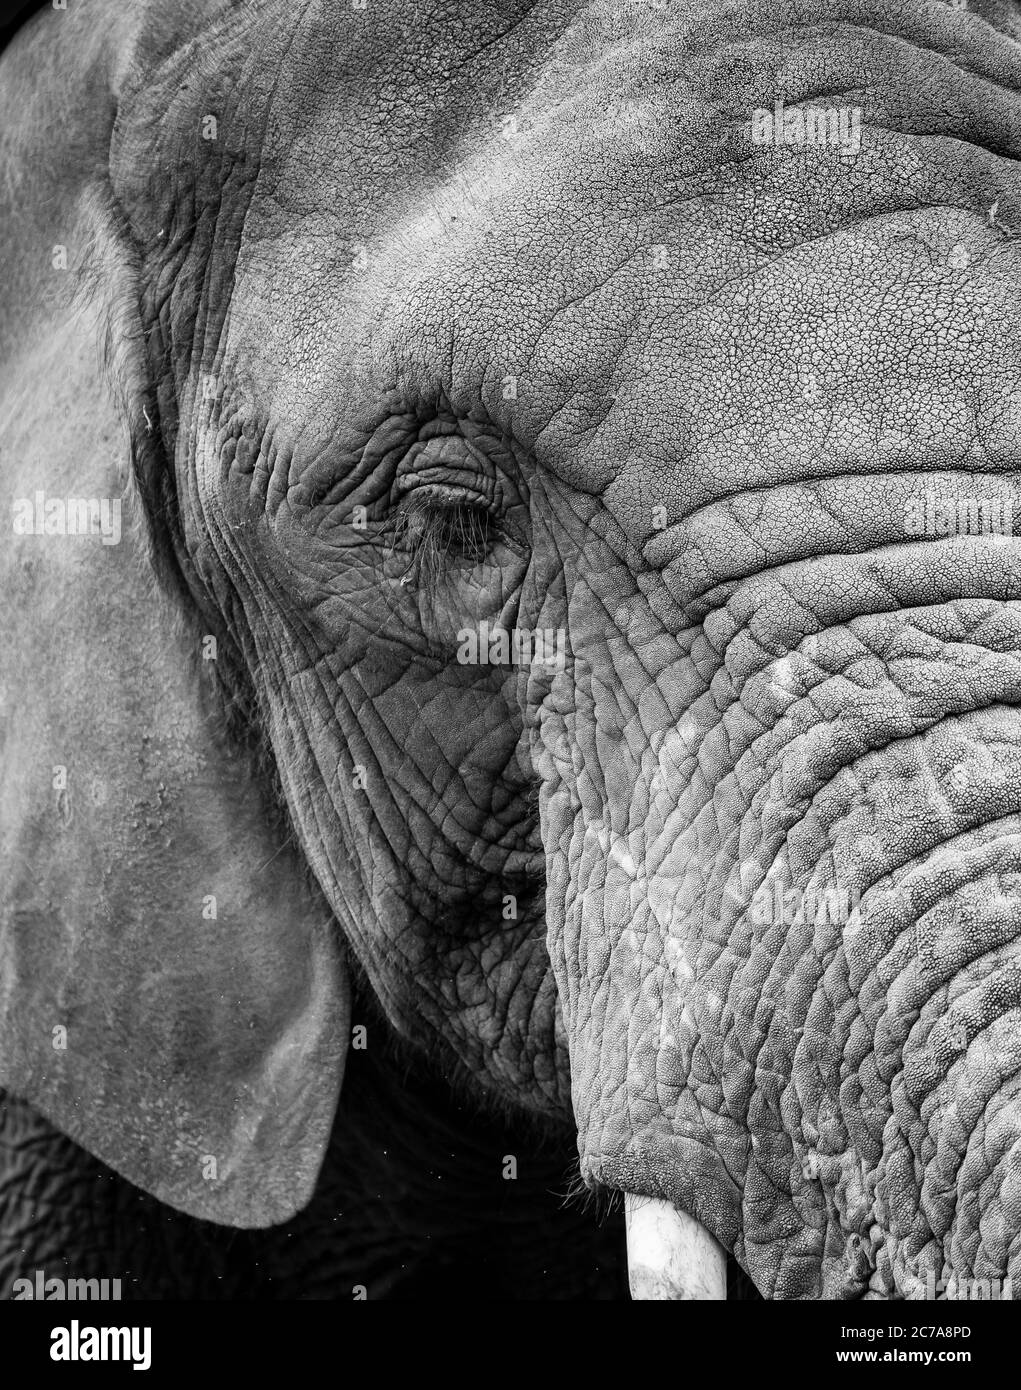 Vue détaillée et monochrome de la tête gros plan sur l'éléphant d'Afrique (Loxodonta africana) isolé en plein air à West Midland Safari Park, Royaume-Uni. Banque D'Images